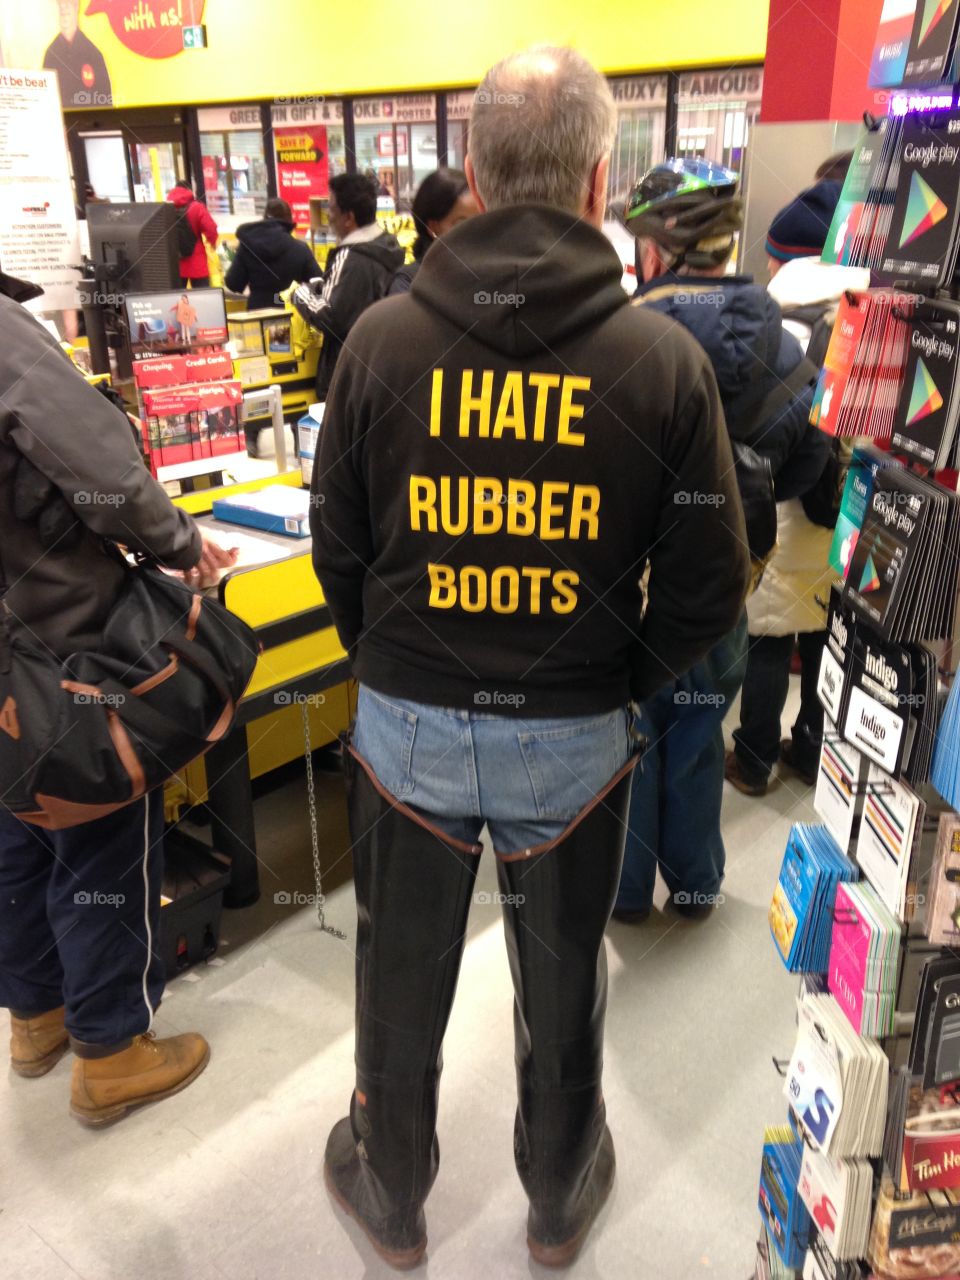 I hate rubber boots

By Kapturer 